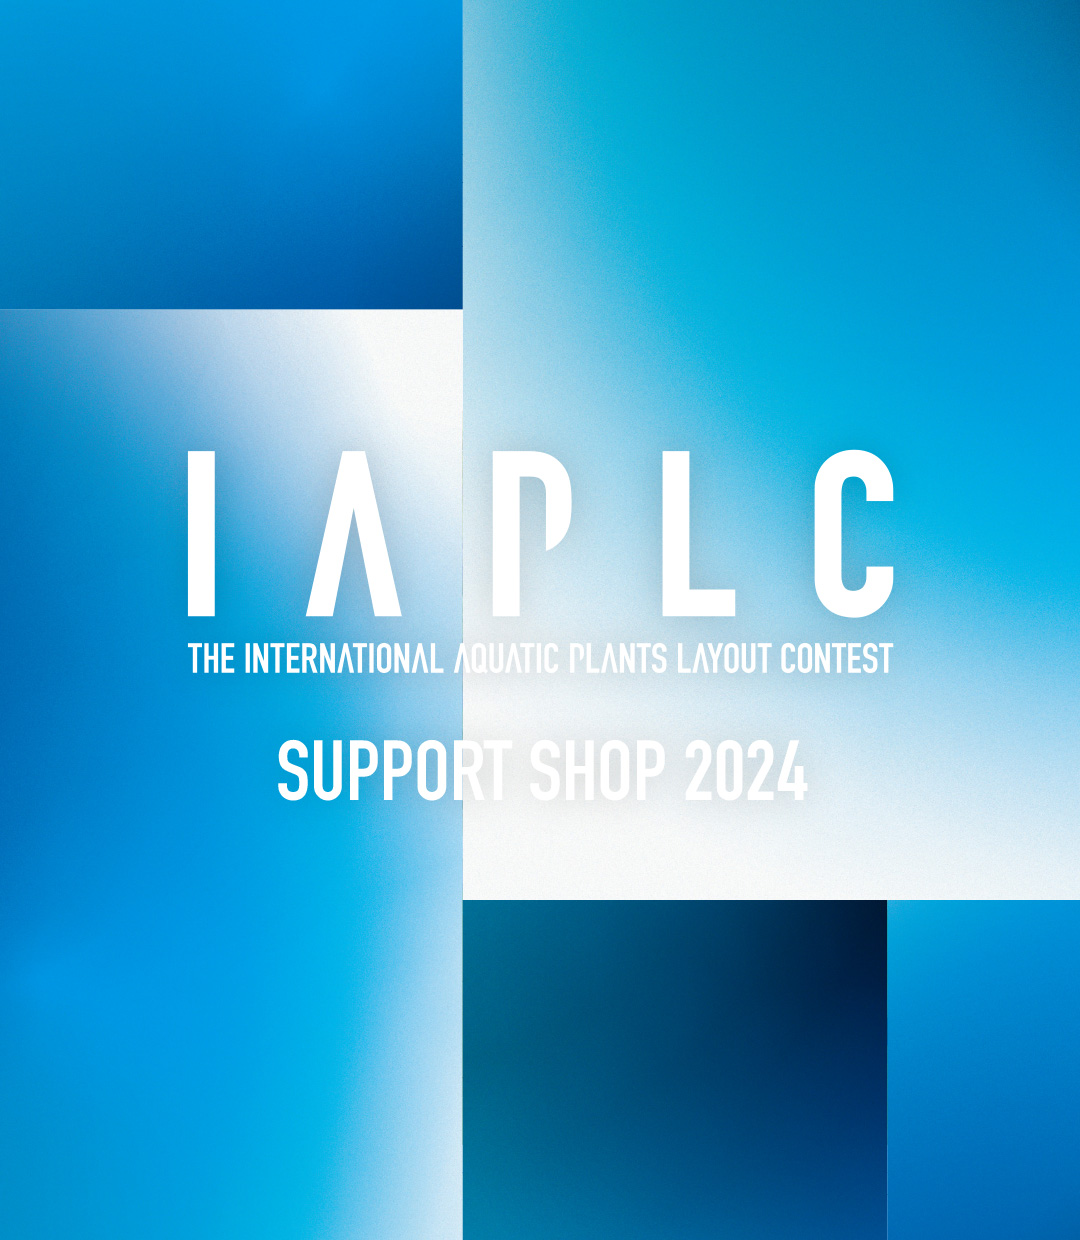 IAPLC サポートショップ 2024をご紹介します【北海道〜関東】